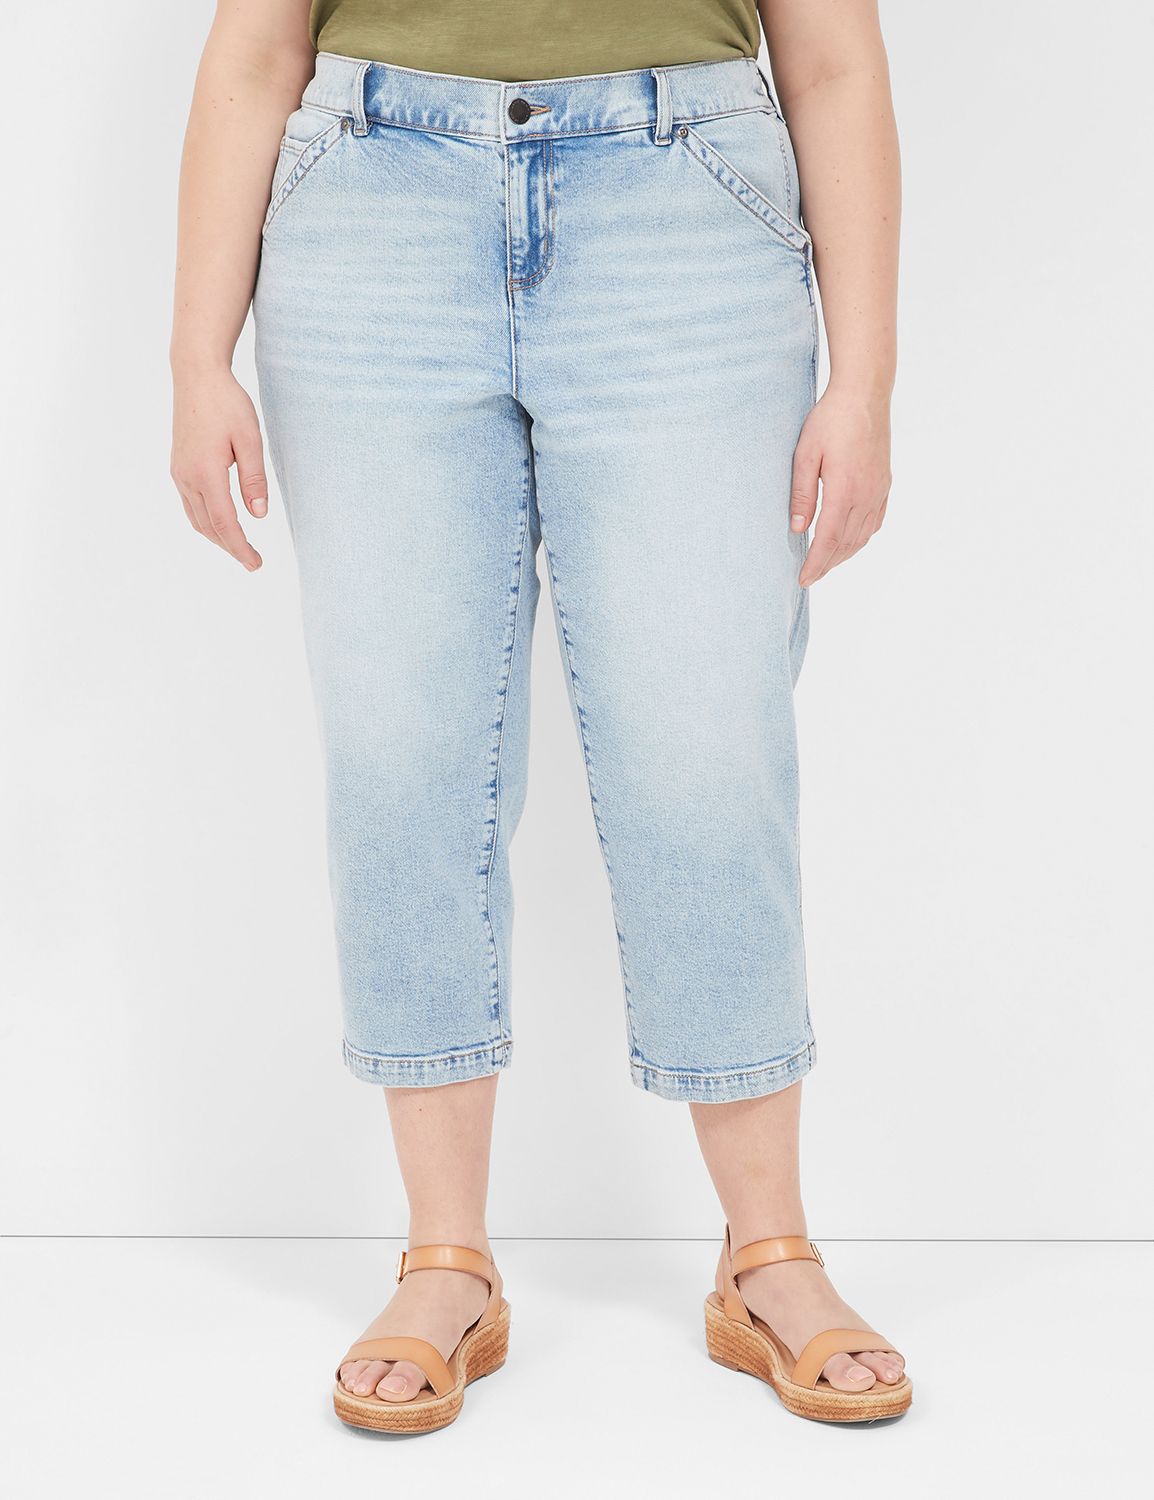 1826 jeans Womens Plus Size Cotton Stretch CAPRI Pants Sizes 16 & 20